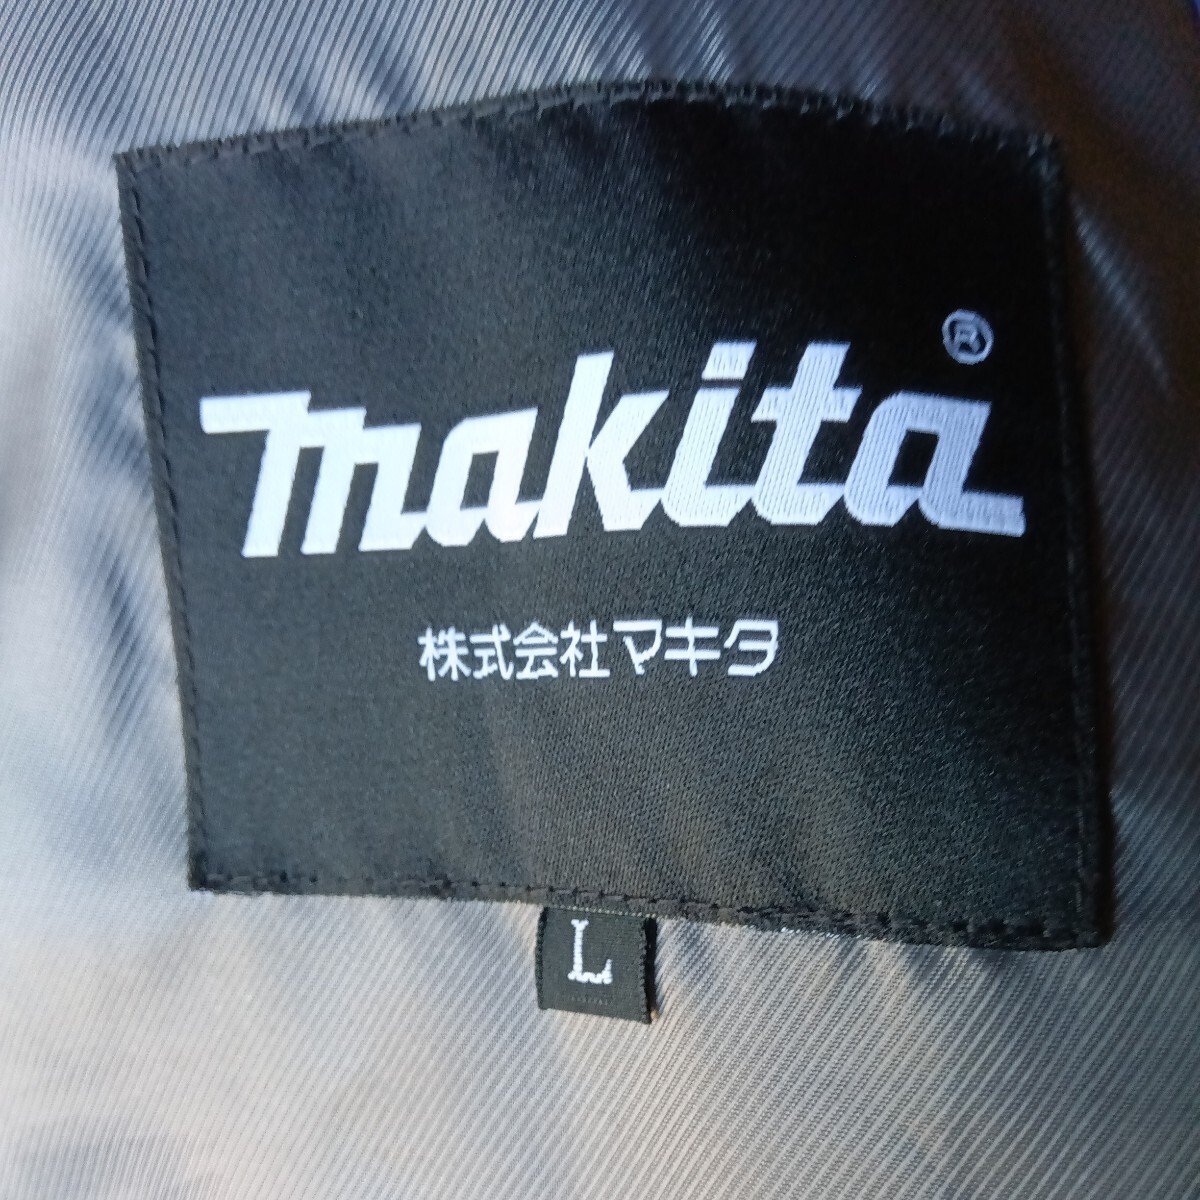  Makita air conditioning clothes 